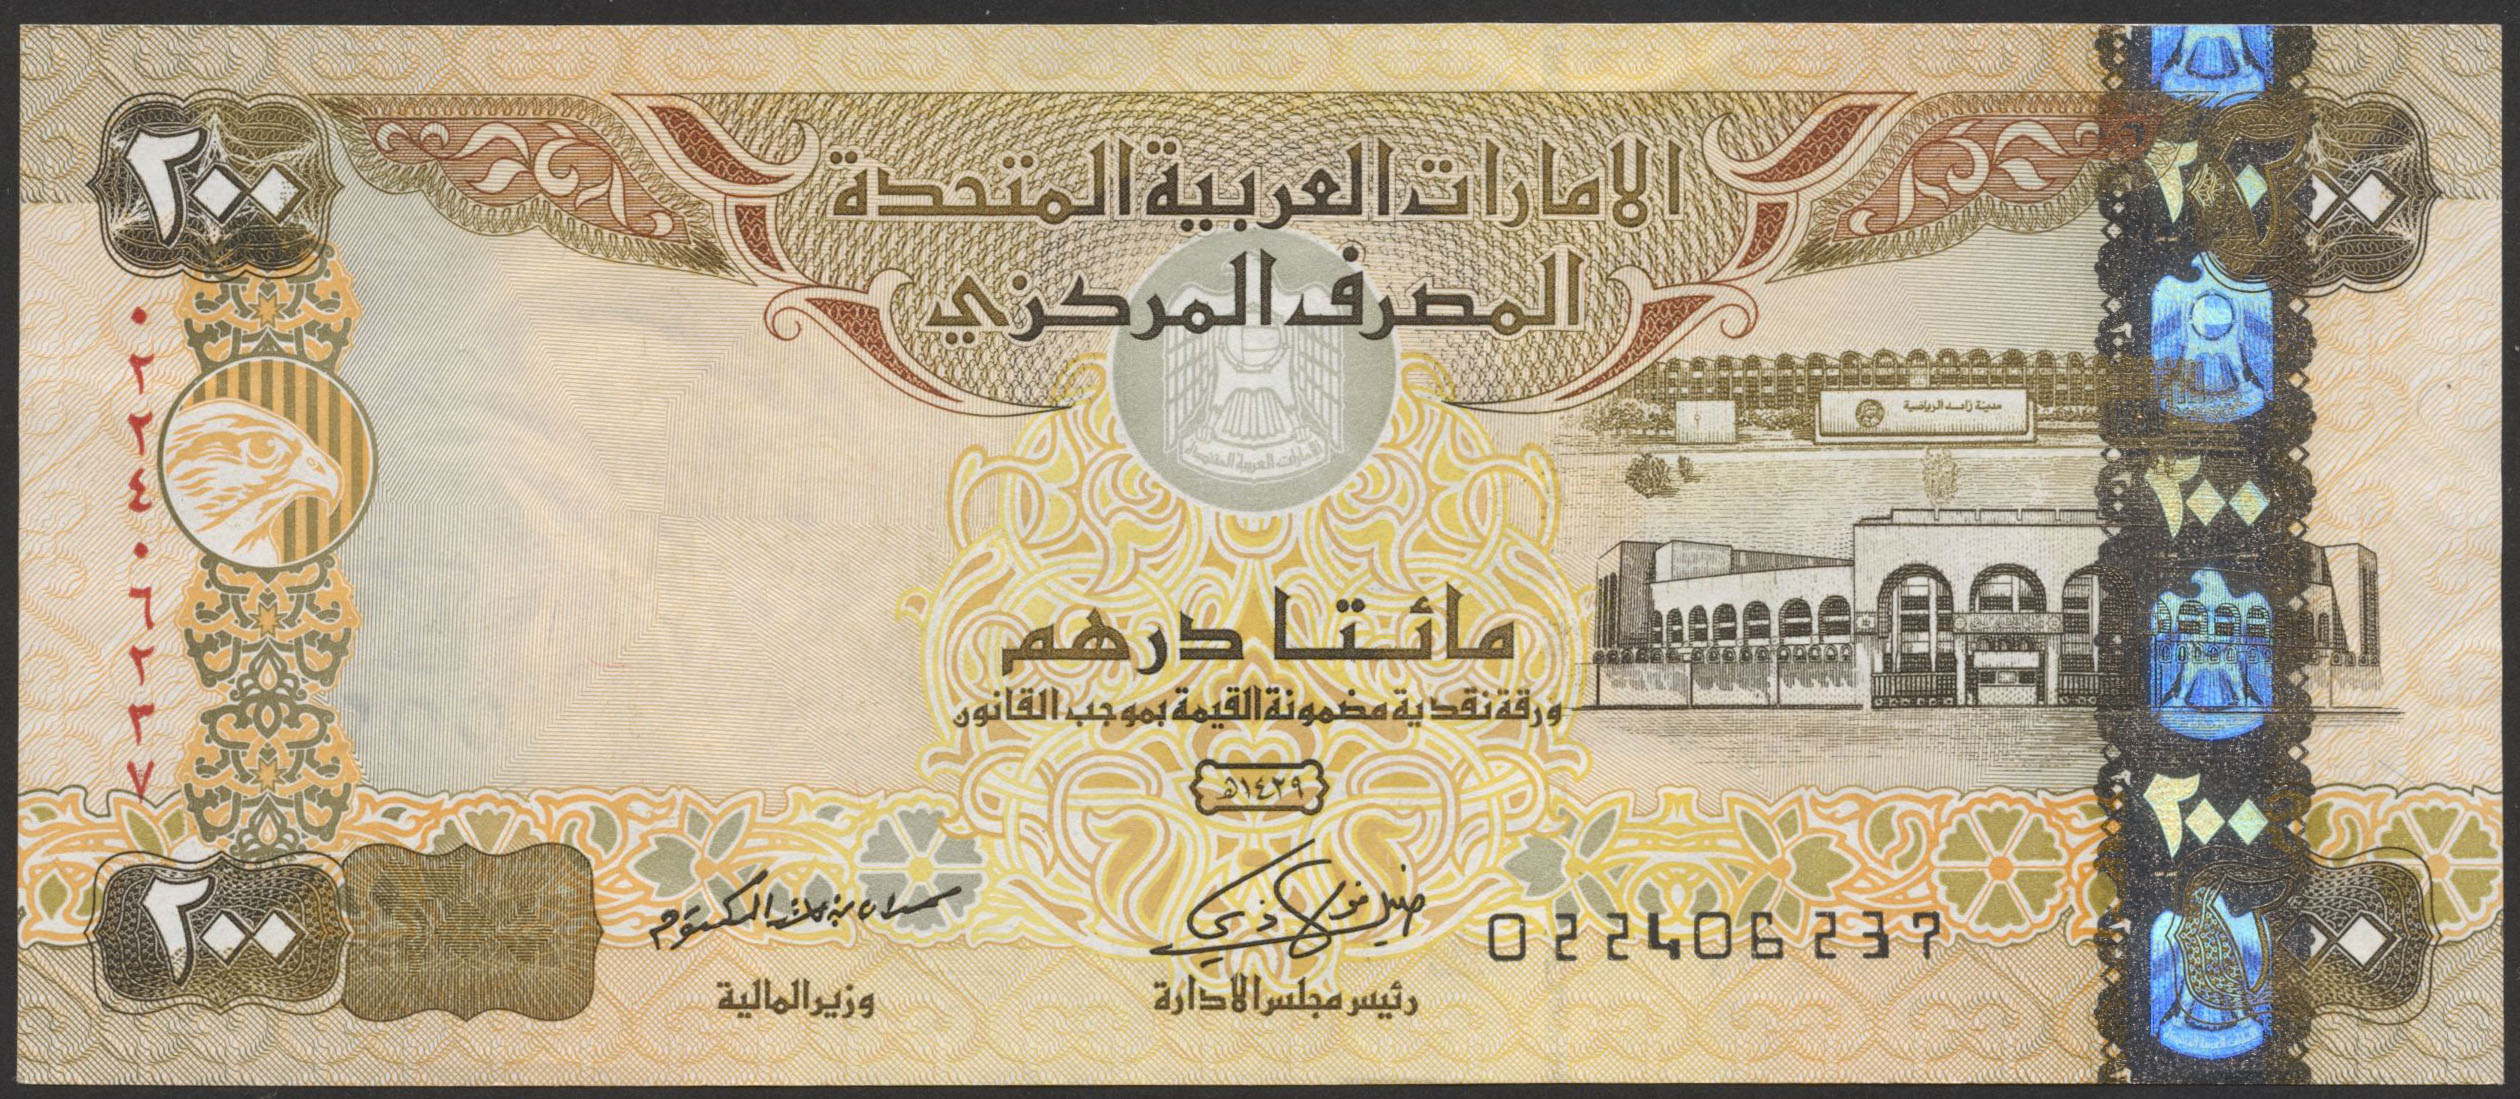 Дирхам сум. Банкнота арабские эмираты 200 дирхам. Купюры дирхамы ОАЭ. Банкнота 5 дирхамов ОАЭ. Банкноты United arab Emirates,2008, 50 dirhams.